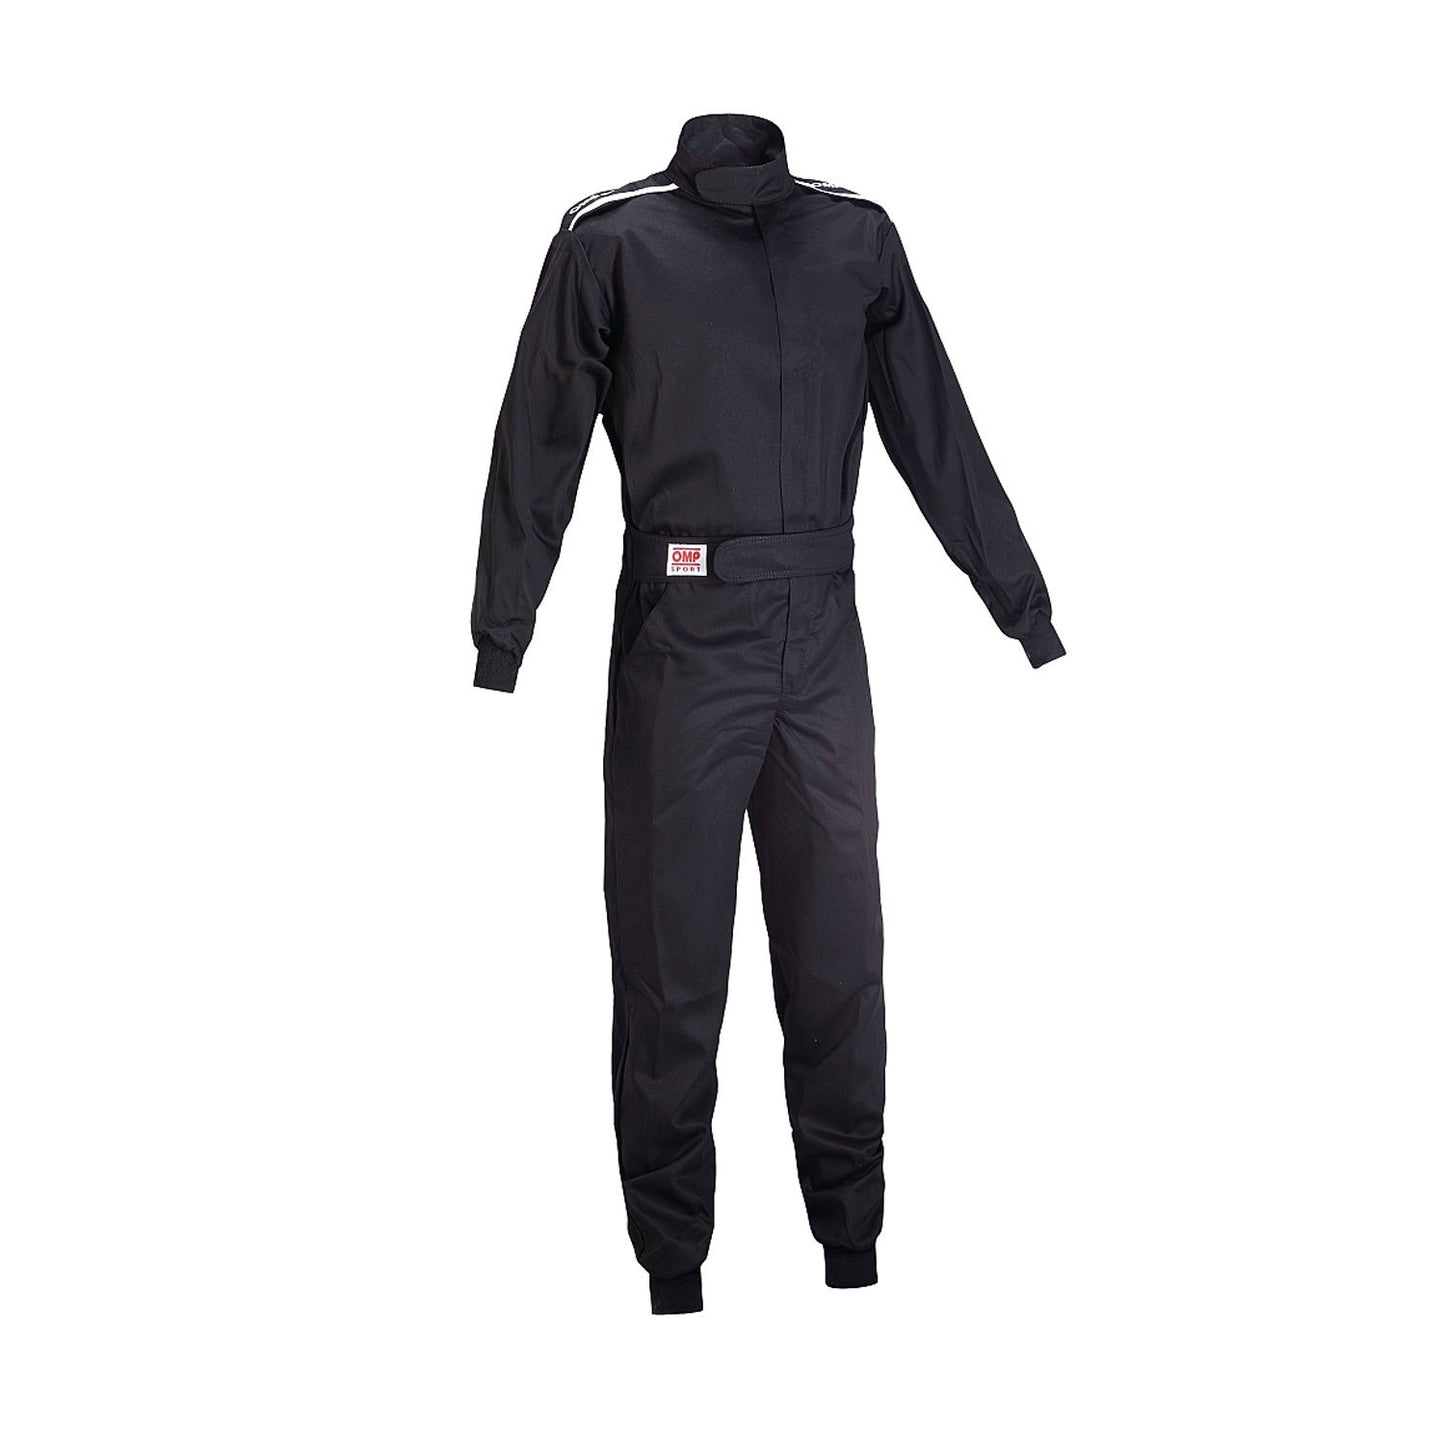 OMP OS-10 Training Suit Black